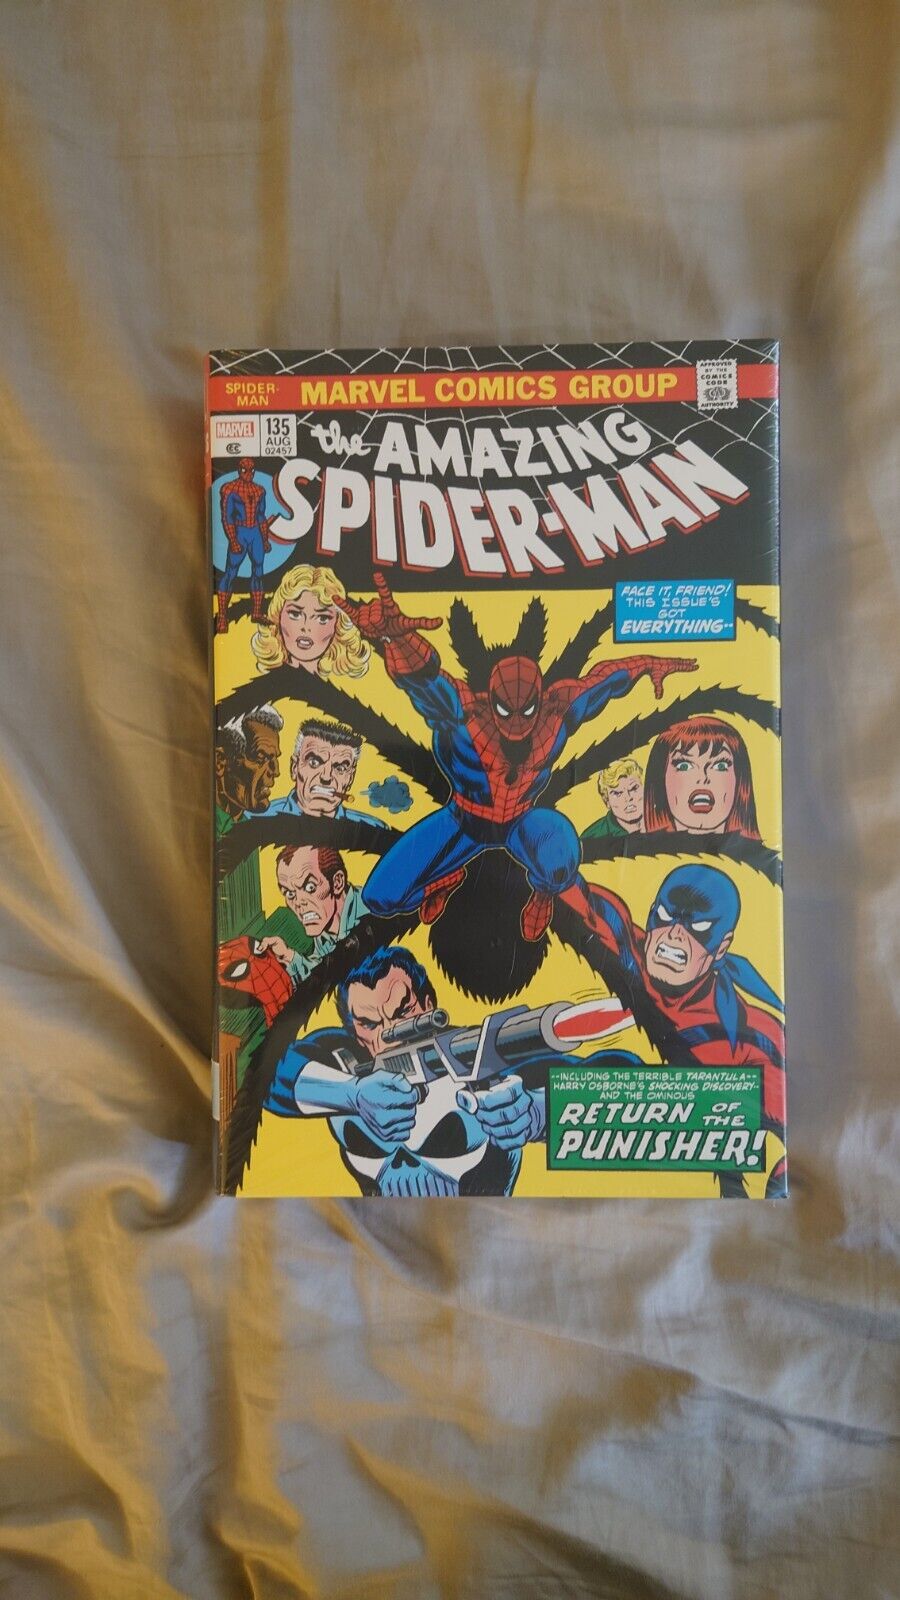 The Amazing Spiderman Omnibus Volume 4 / Marvel Comics